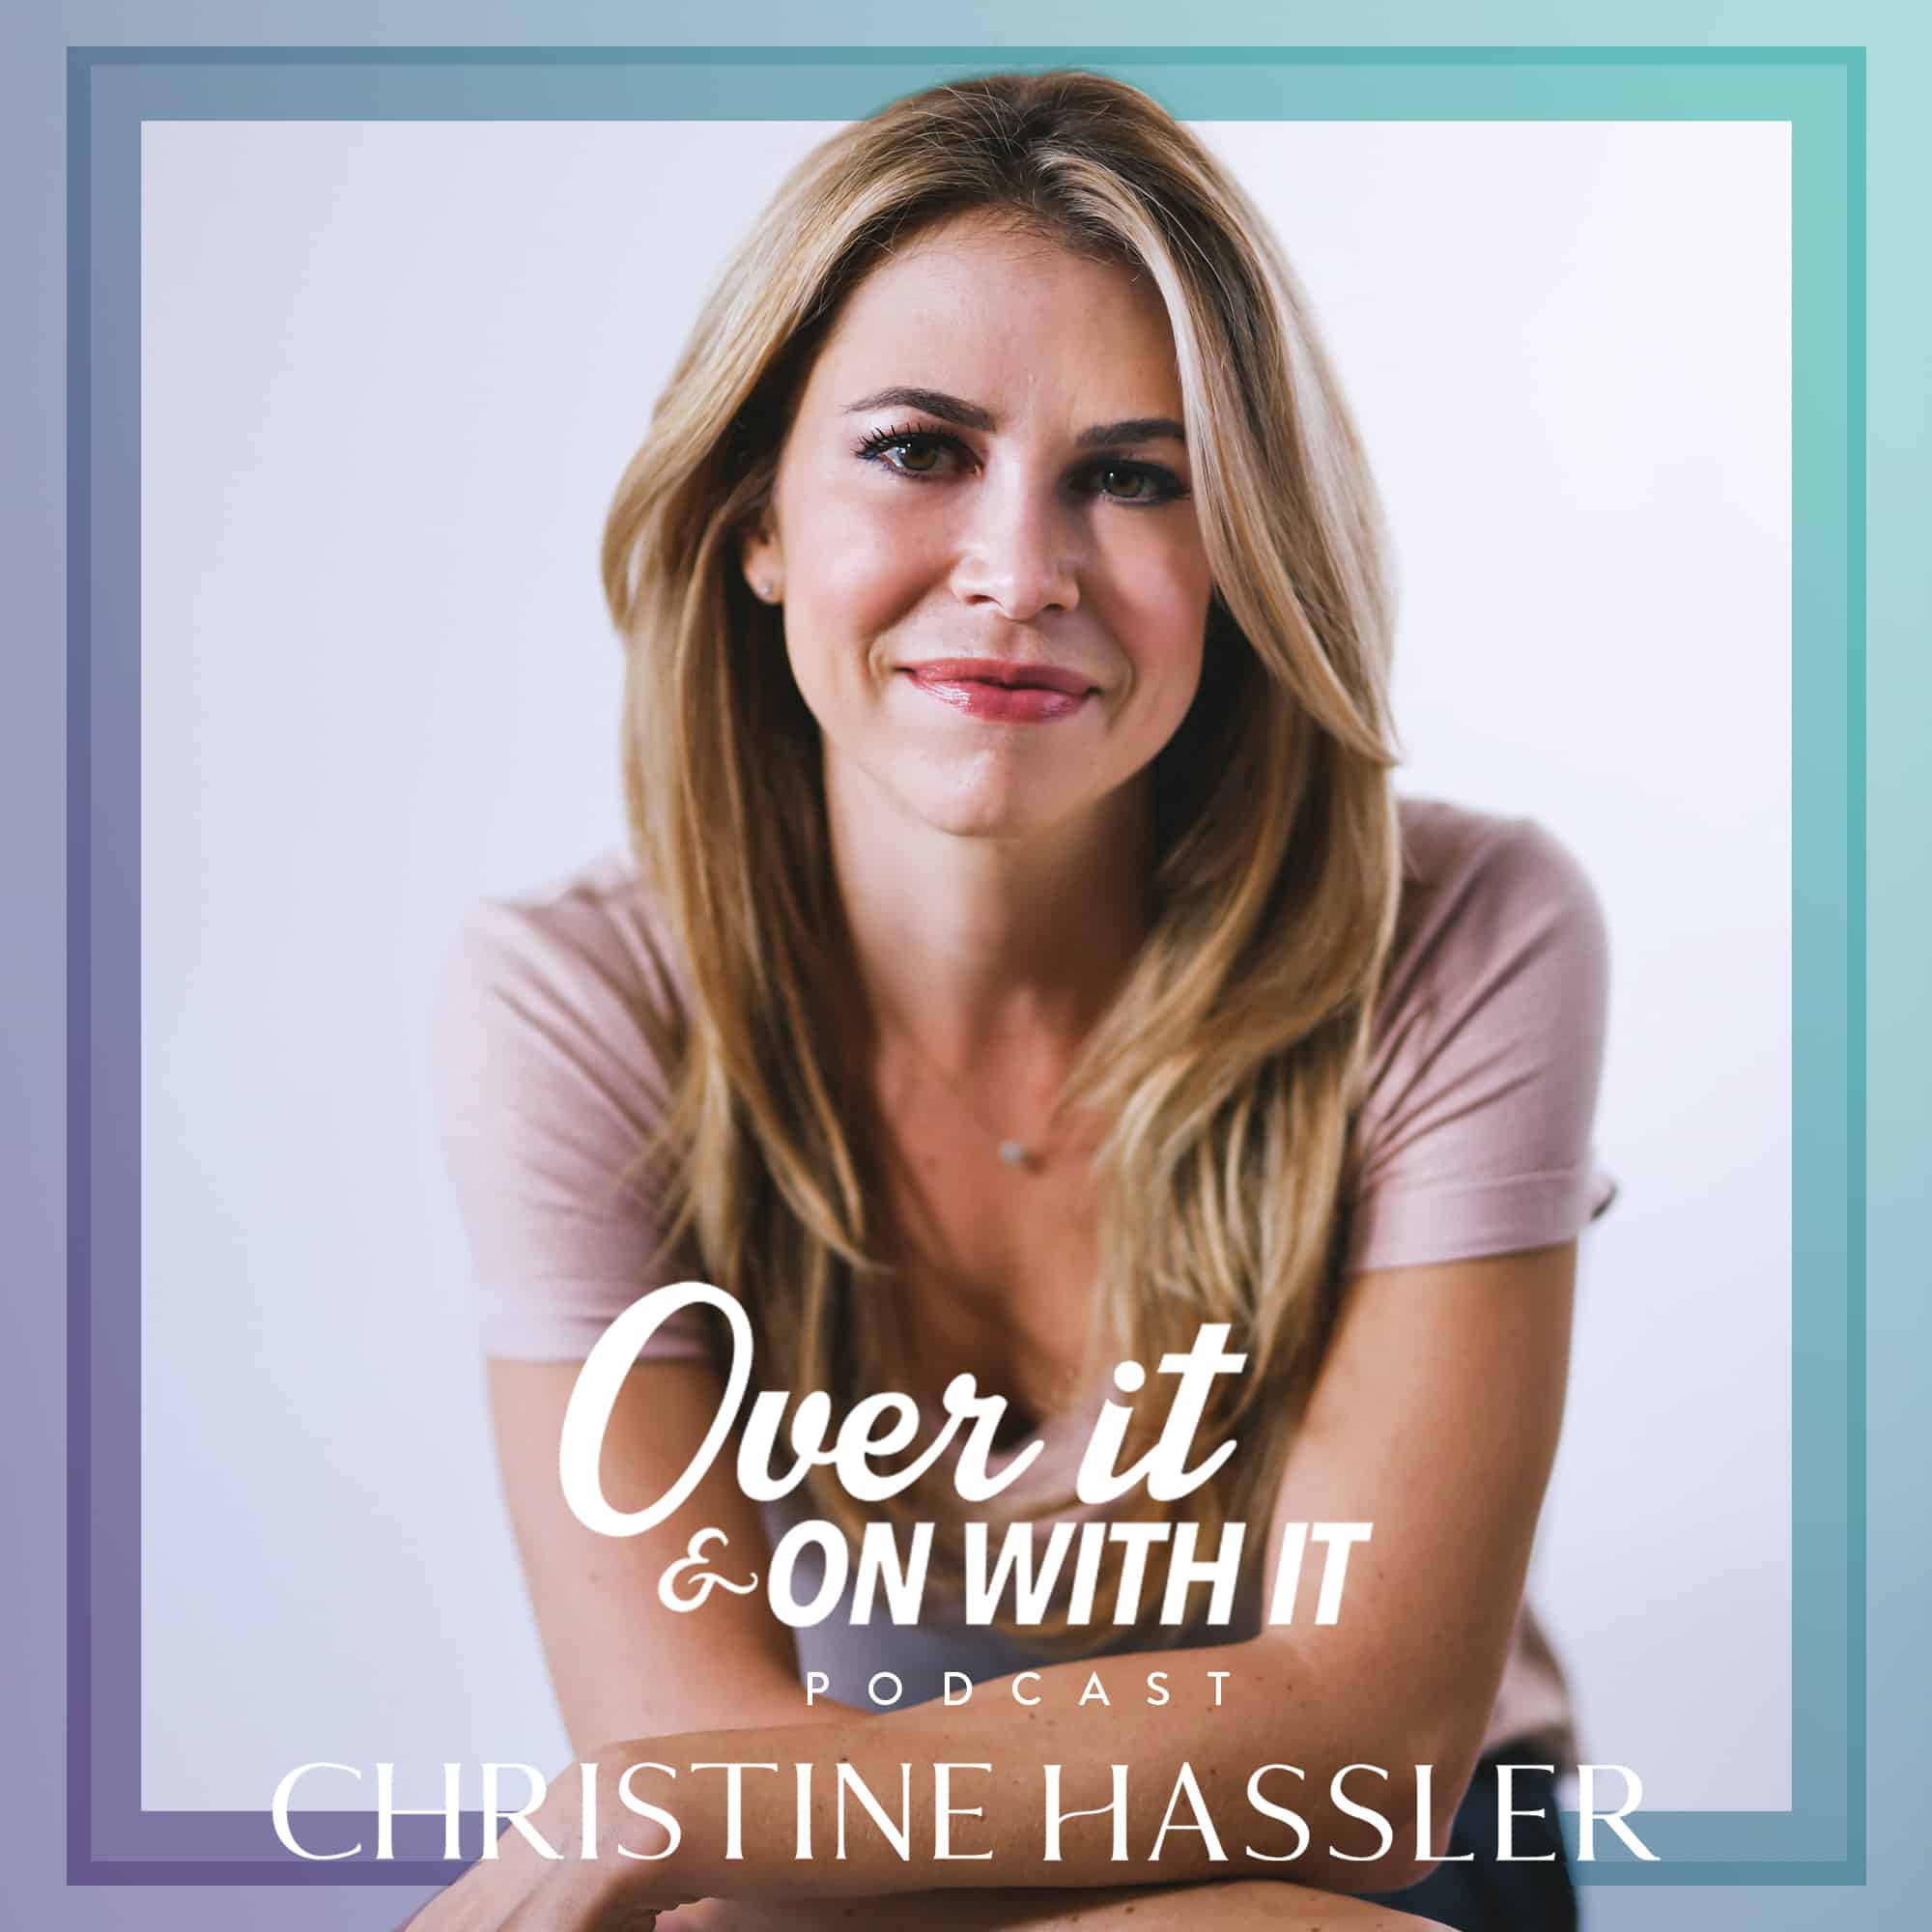 ChristineHassler-Podcast-CoverArt